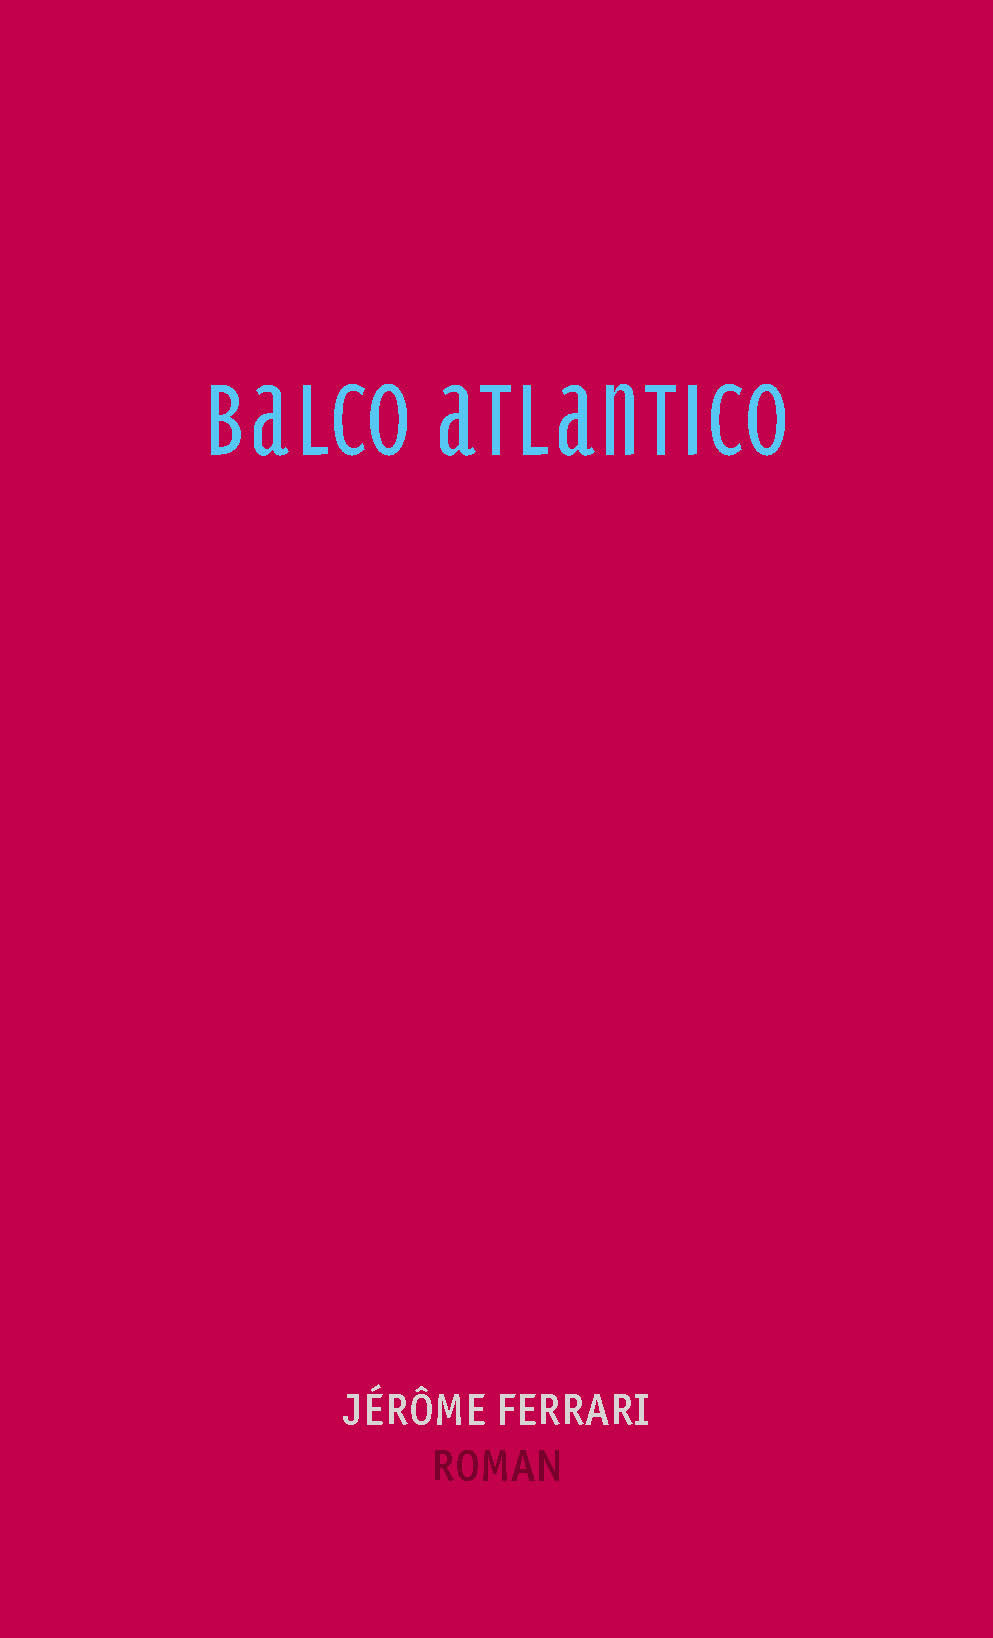 Balco Atlantico von Jerôme Ferrari